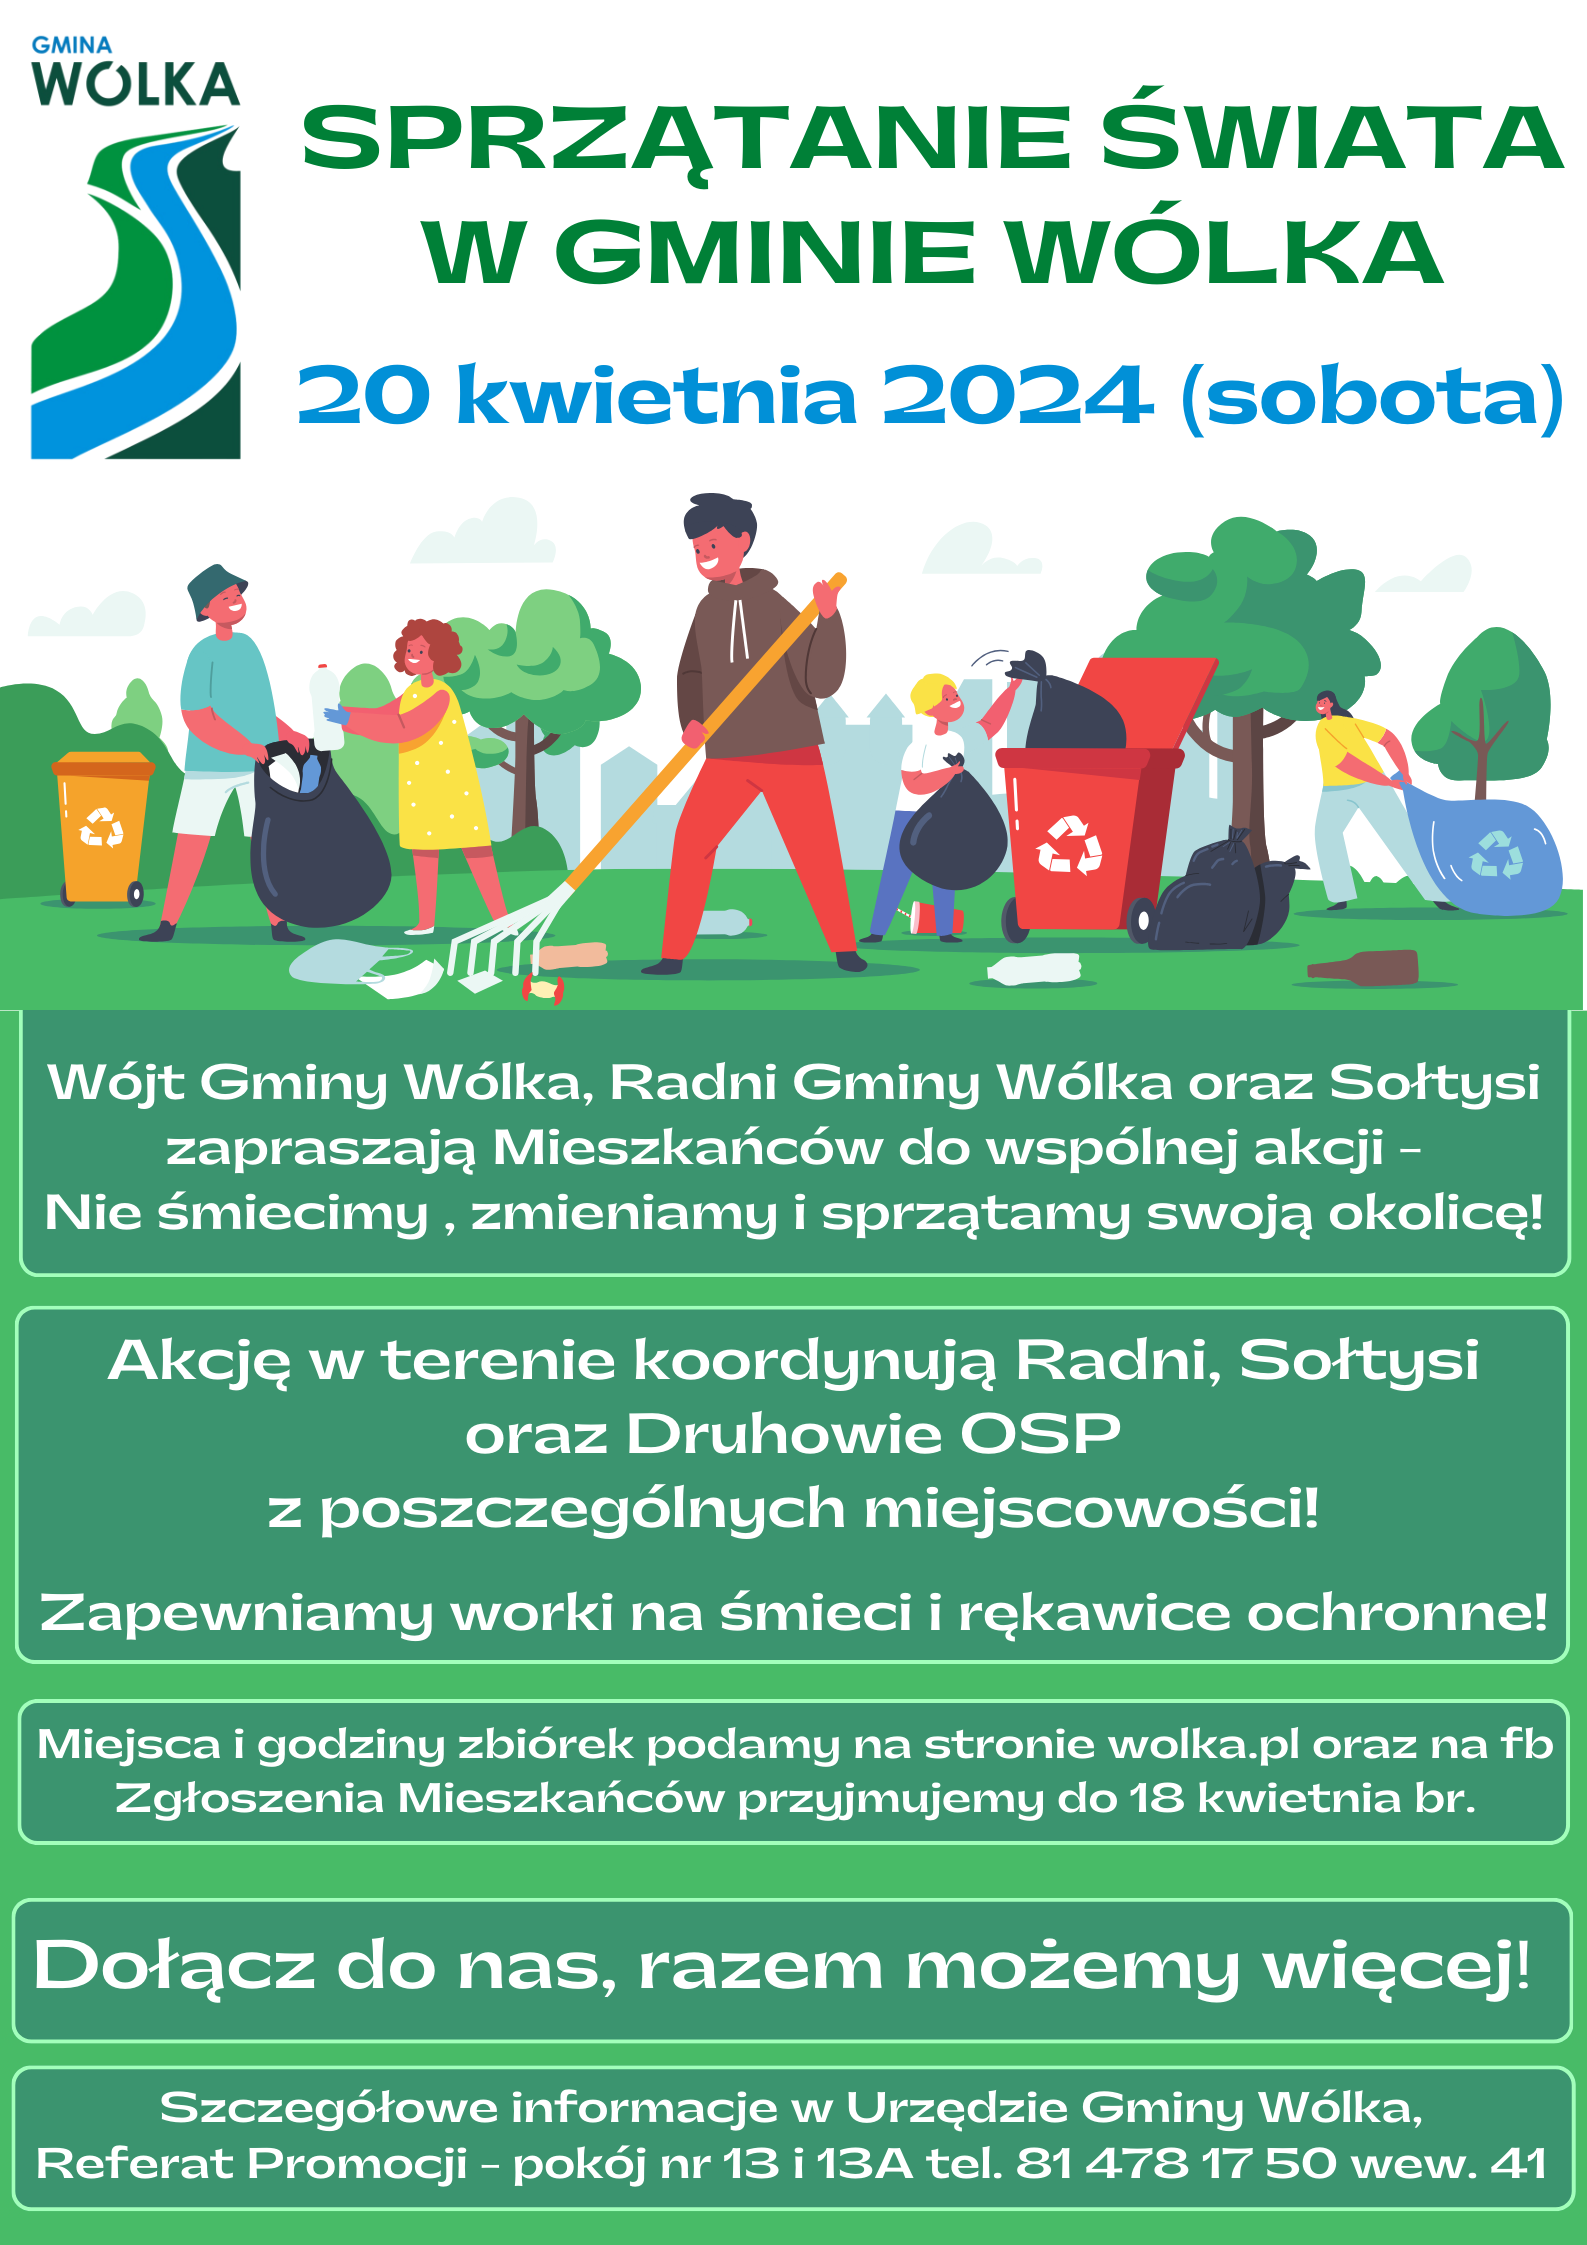 Plakat zaprasza na akcję sprzątania środowiska "Wiosenna Wólka" w dniu 22 kwietnia 2024. Rysunki osób zbierających śmieci i segregujących odpady, zielone drzewa i symbole recyklingu.